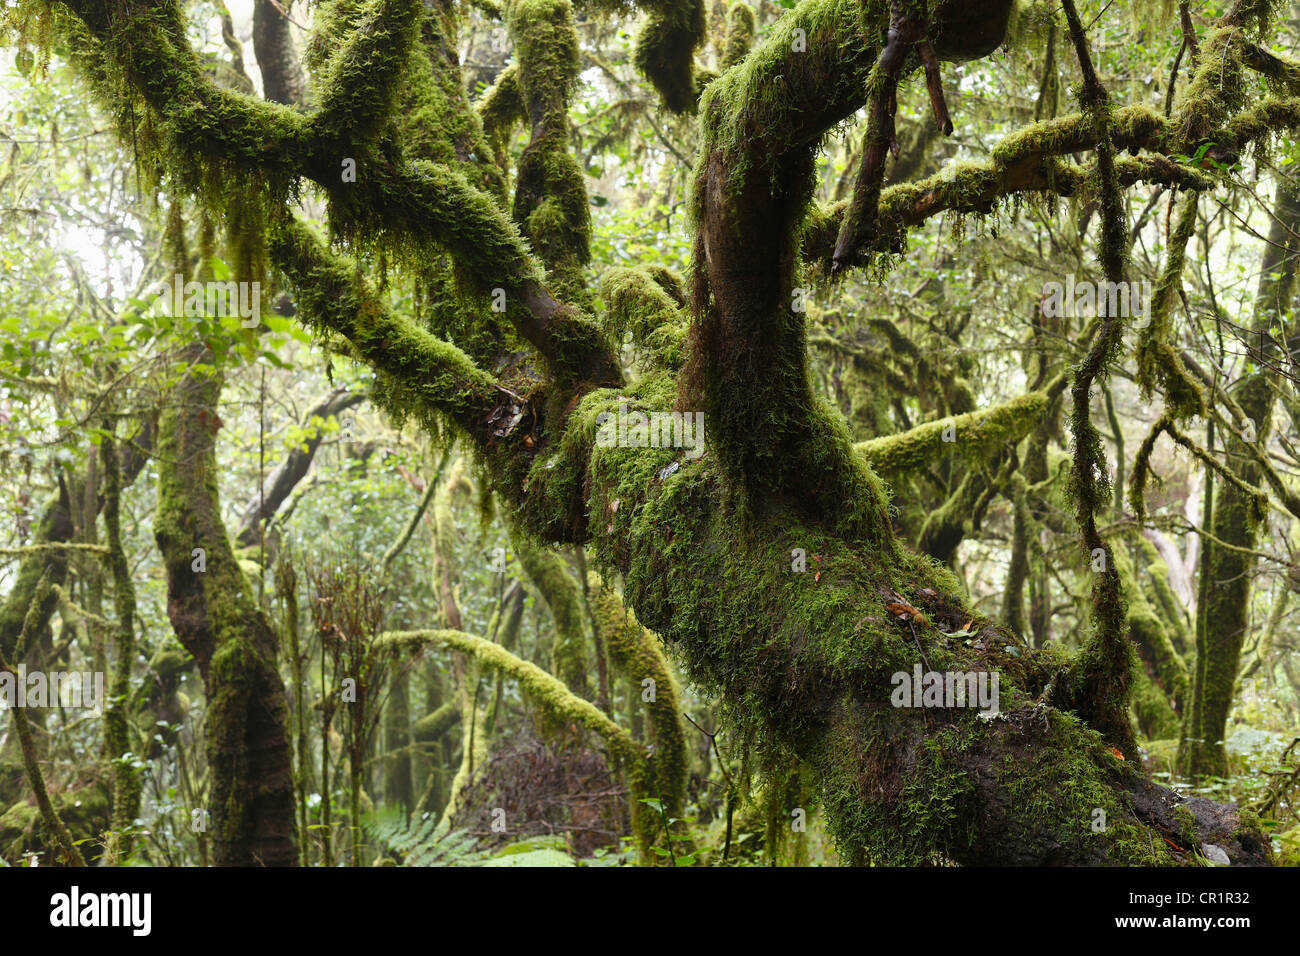 Mossy tronchi di albero foresta laurel, Parco Nazionale di Garajonay, Sito Patrimonio Mondiale dell'UNESCO, La Gomera, isole Canarie, Spagna, Europa Foto Stock